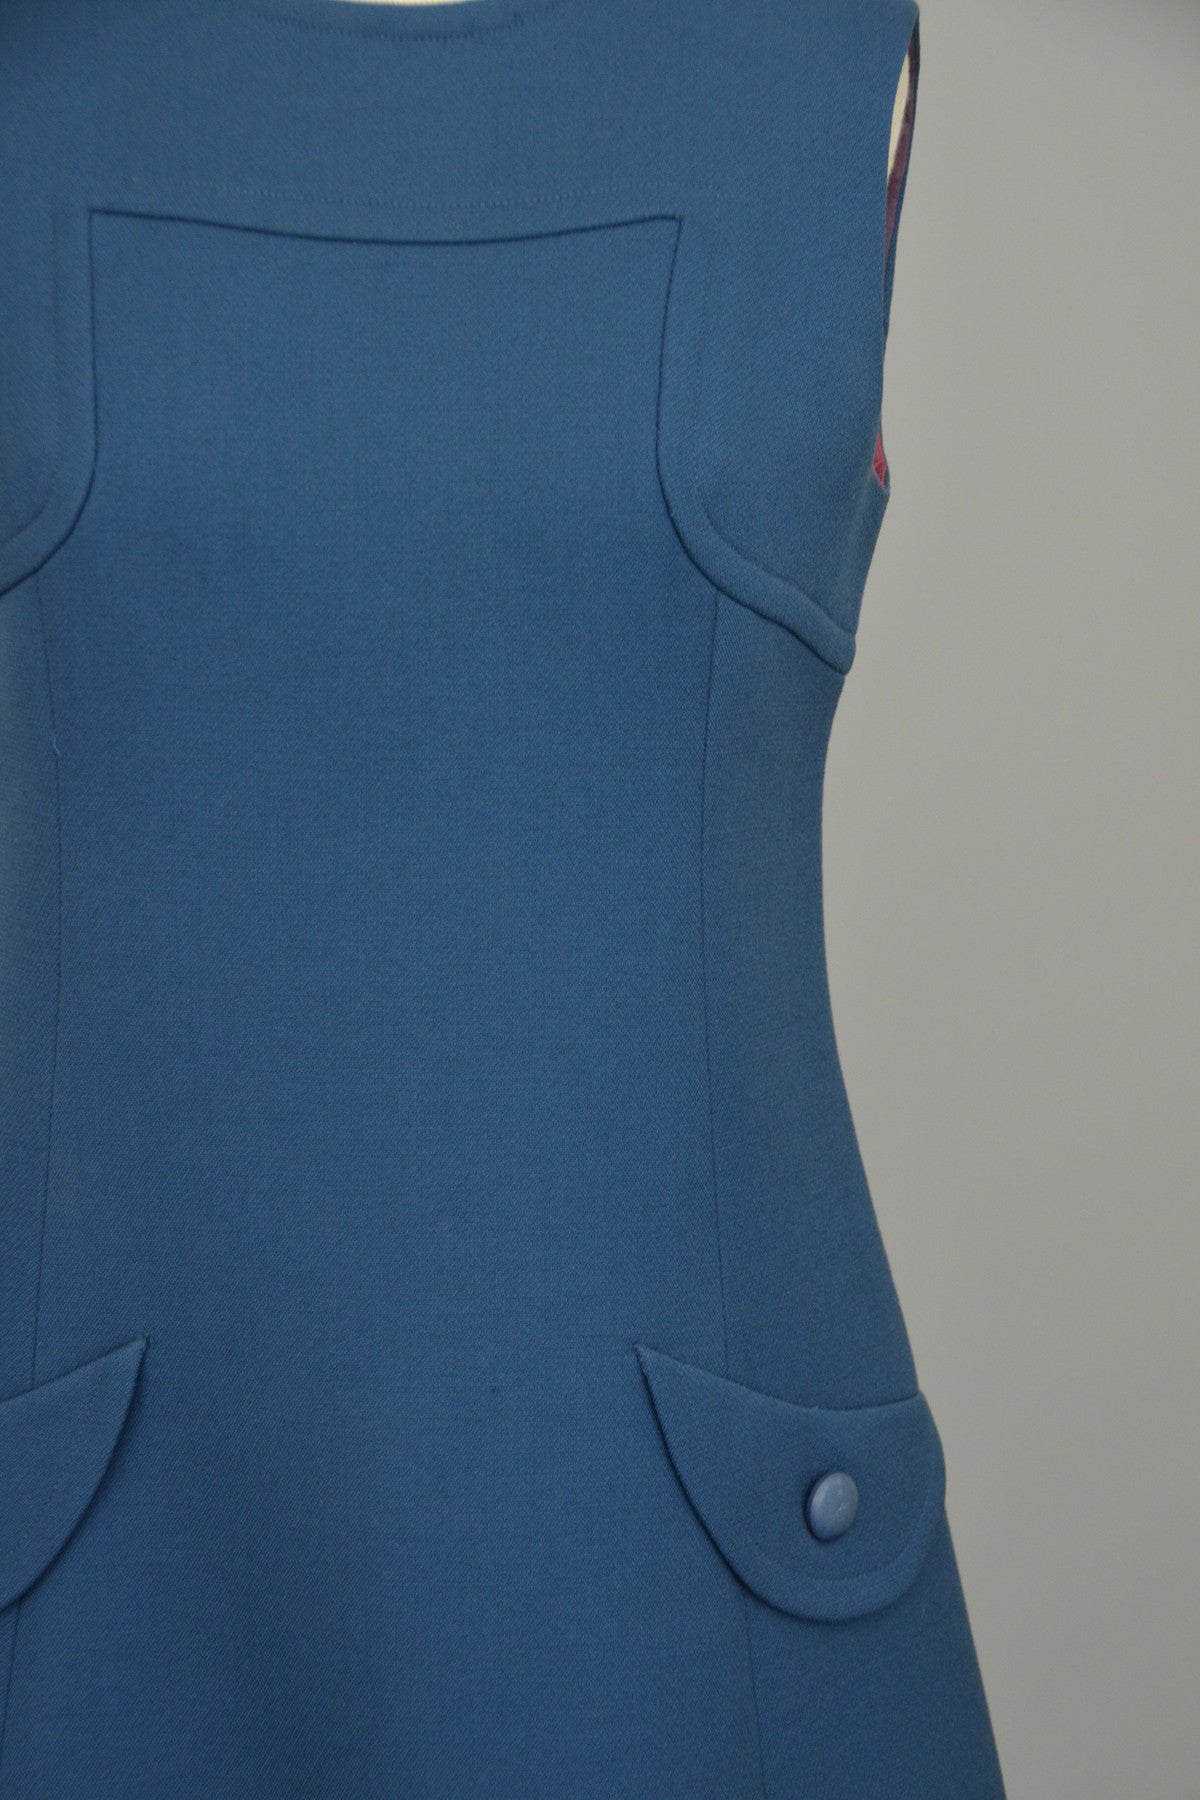 1960s A-Line Mod Blue Vintage Mini Dress